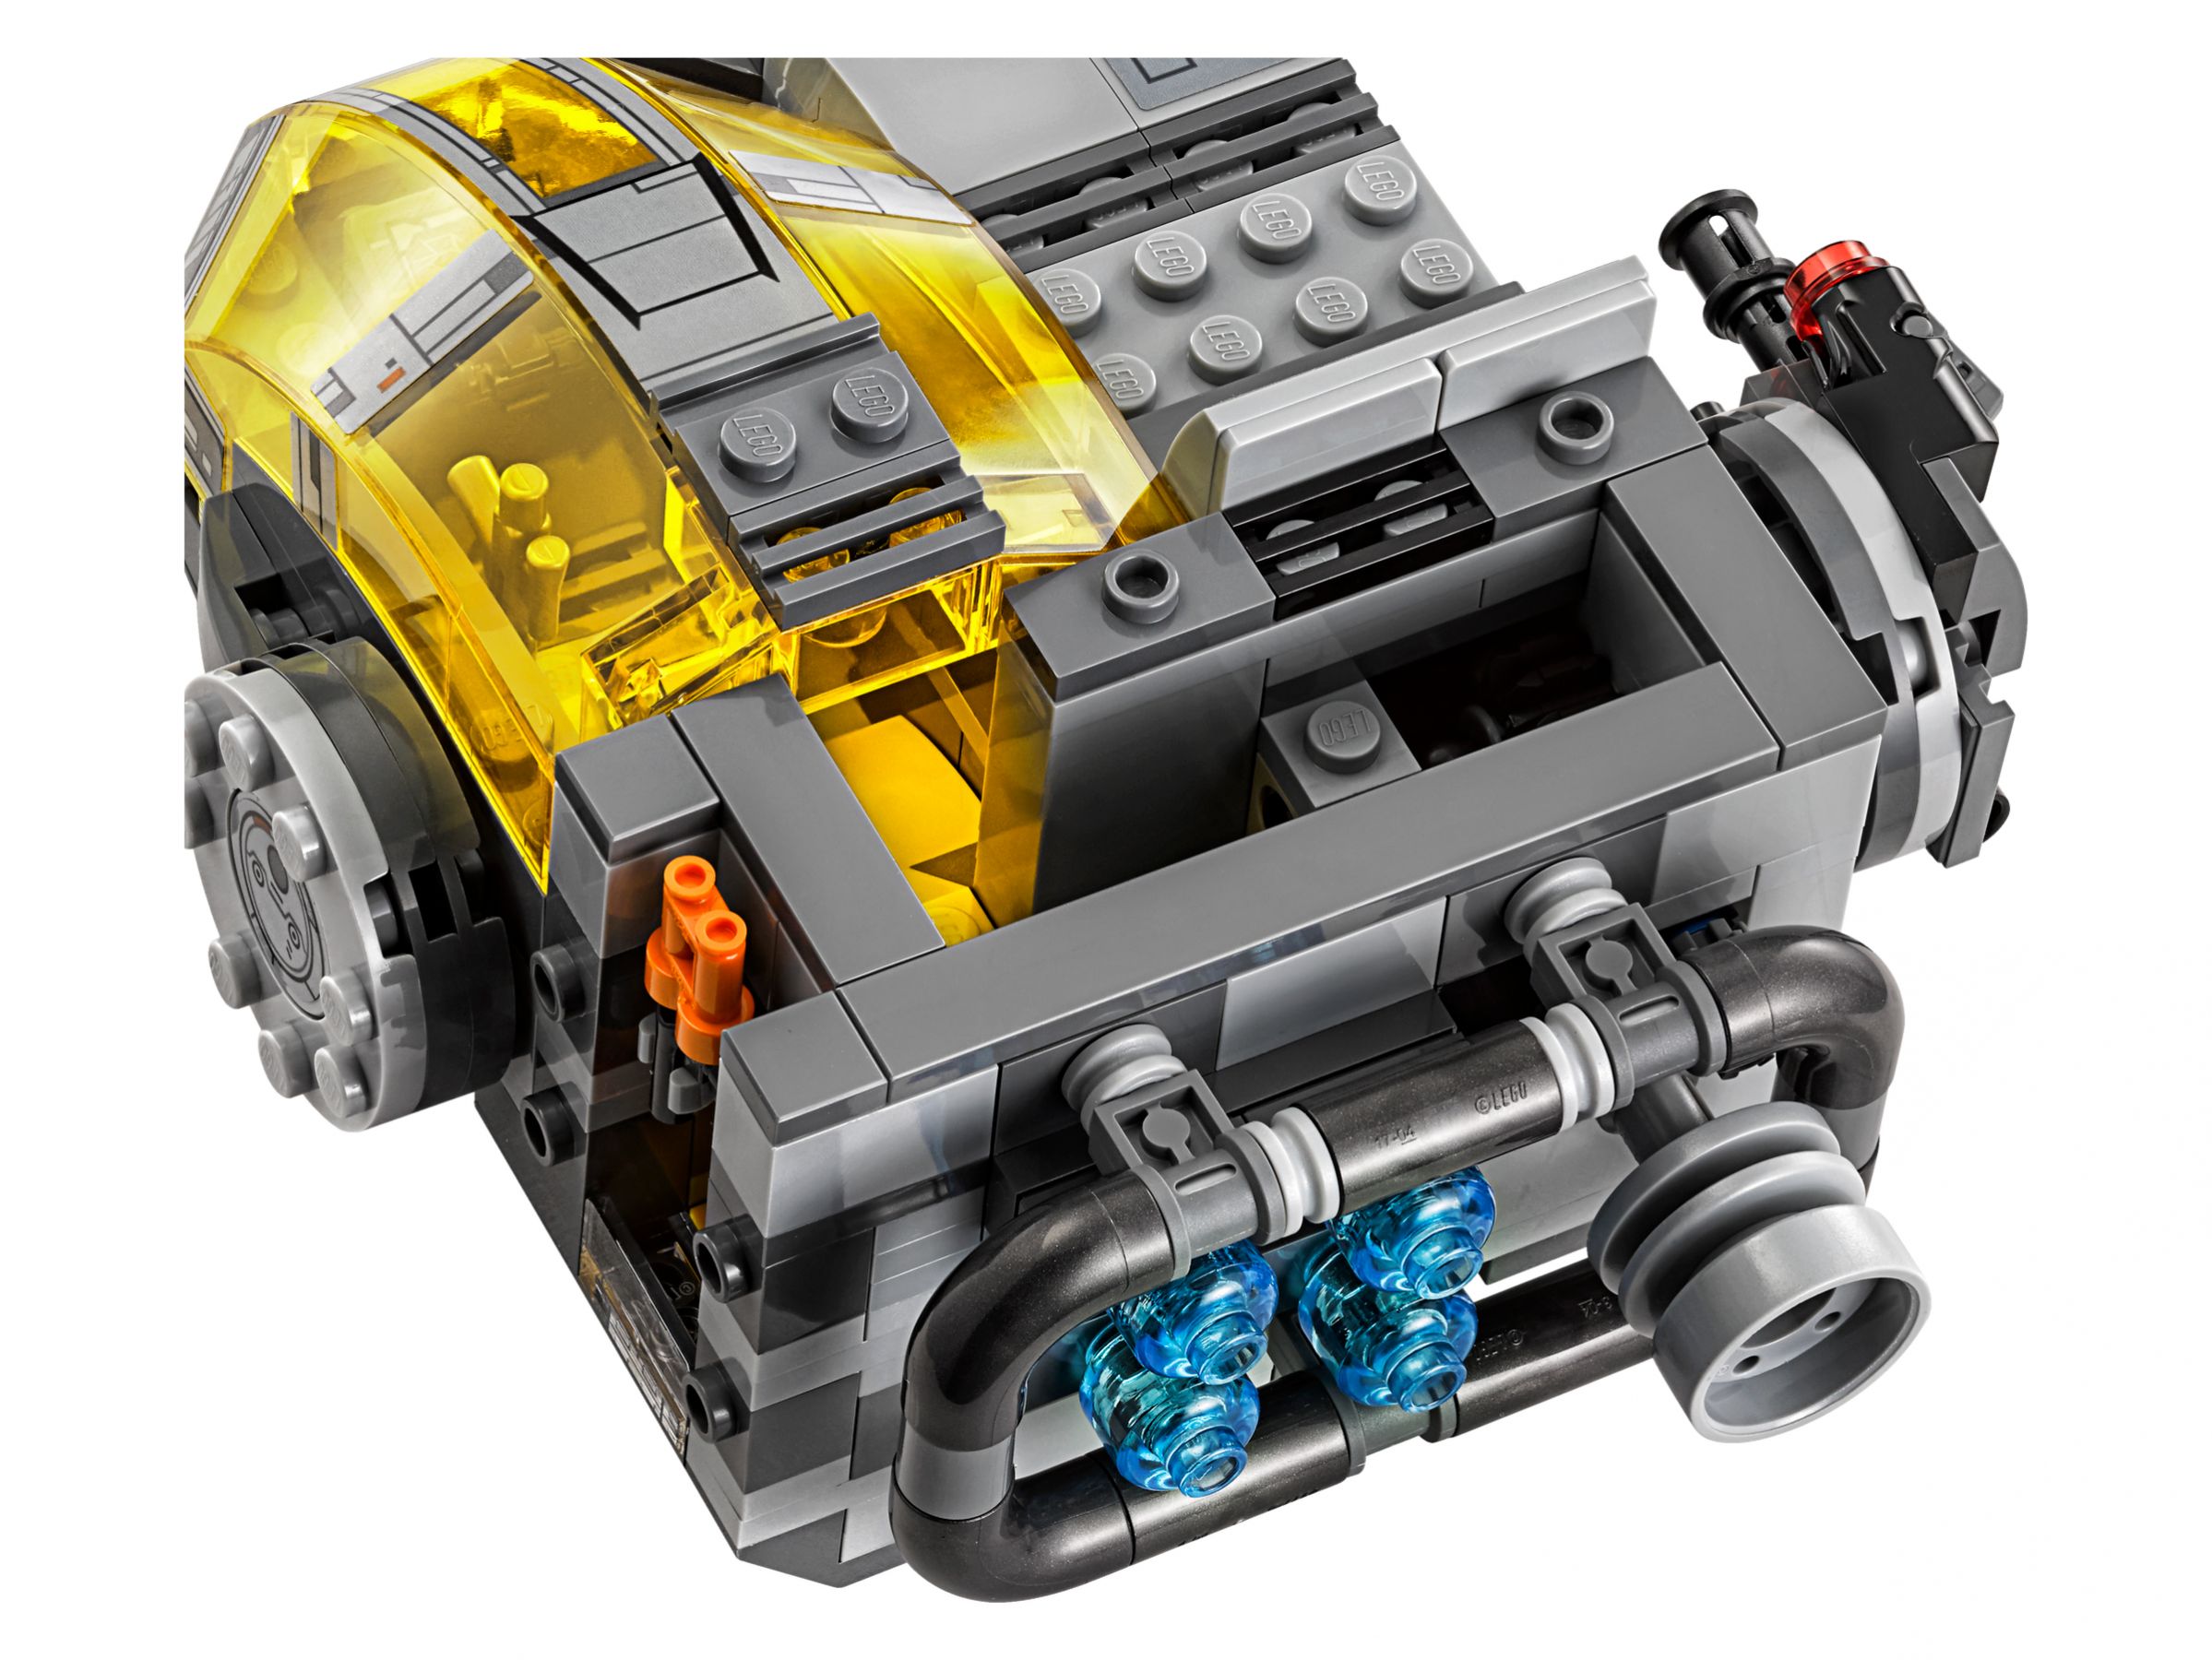 LEGO Star Wars 75176 Resistance Transport Pod™ LEGO_75176_alt5.jpg